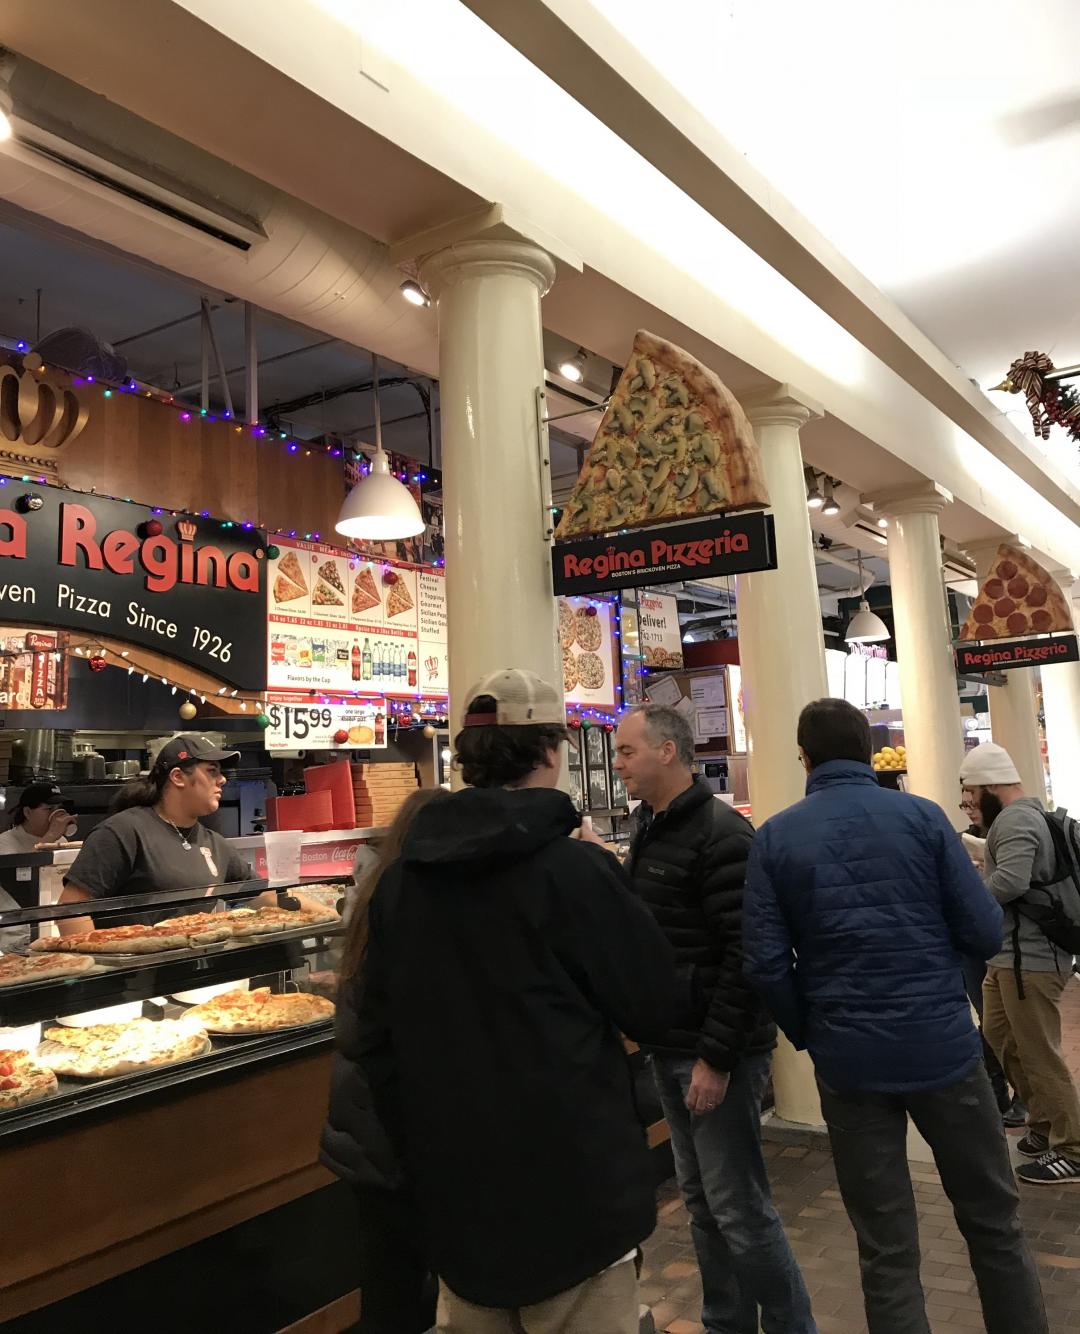 レジーナ ピッツェリア ファニエルホール店 ボストンのおすすめグルメ 食事 現地を知り尽くしたガイドによる口コミ情報 トラベルコ